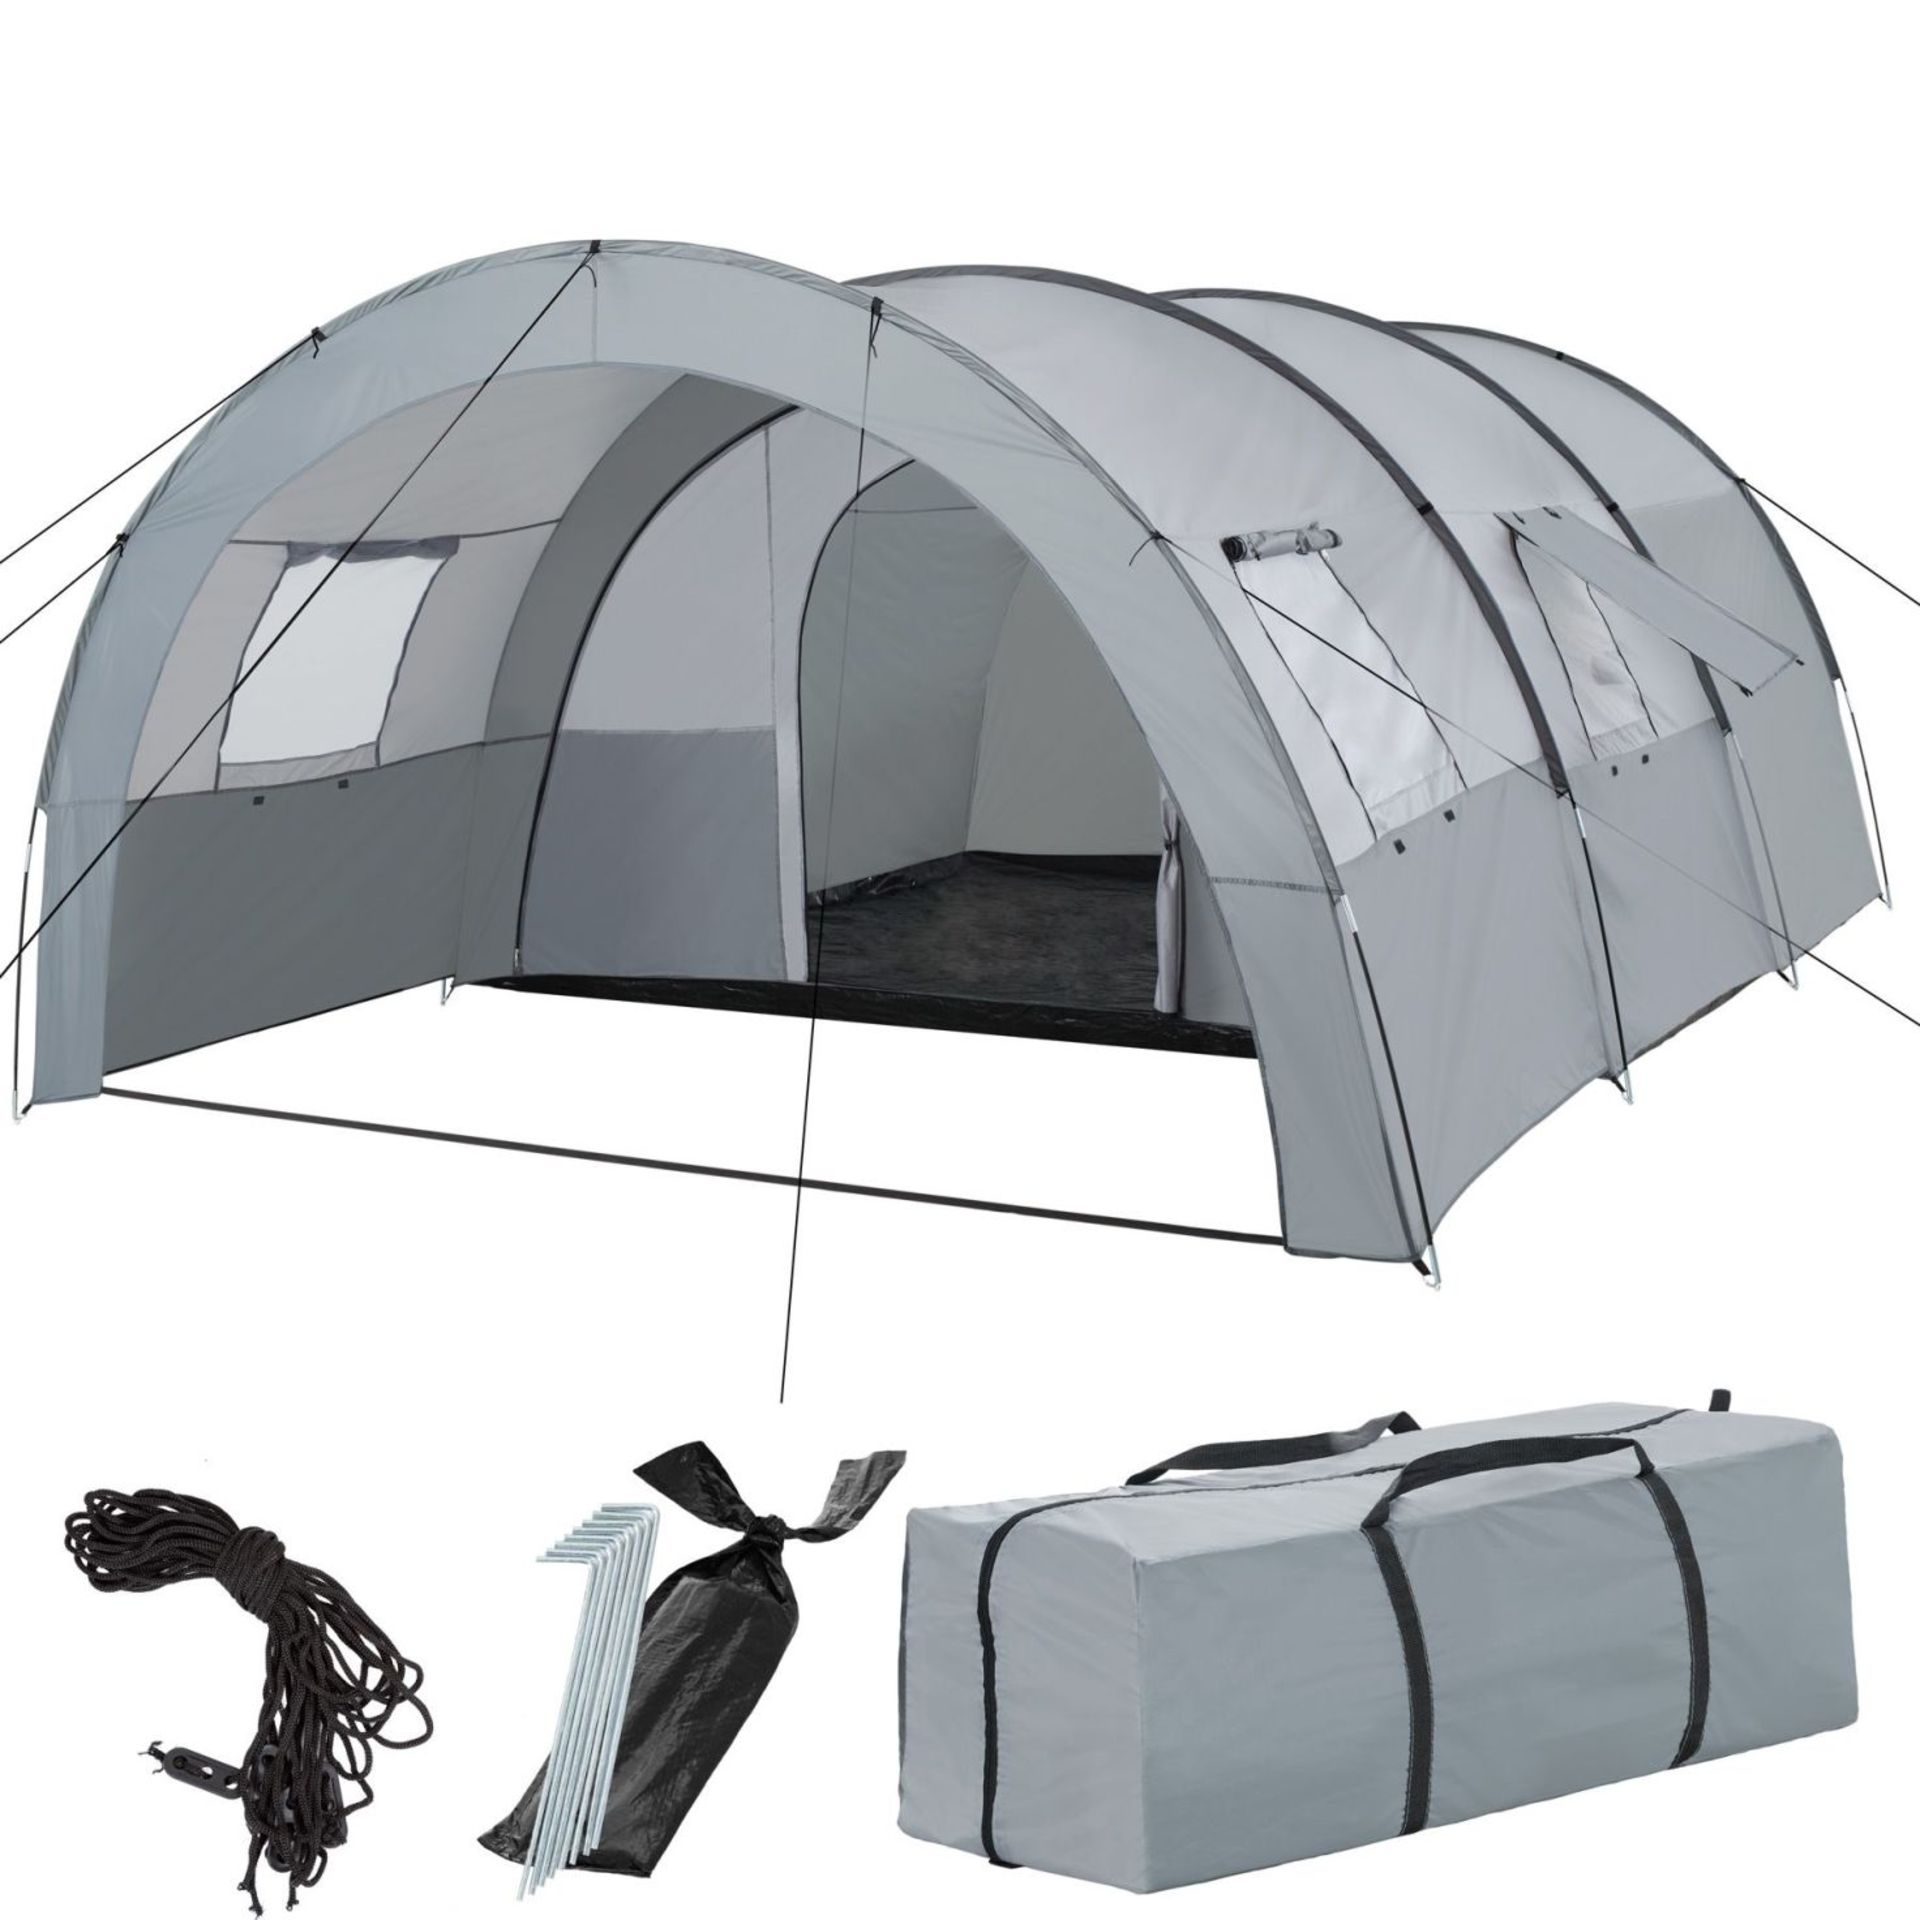 Tectake - 6 Man Tent Woodstock Light Grey And Dark Grey - Boxed. RRP £136.99